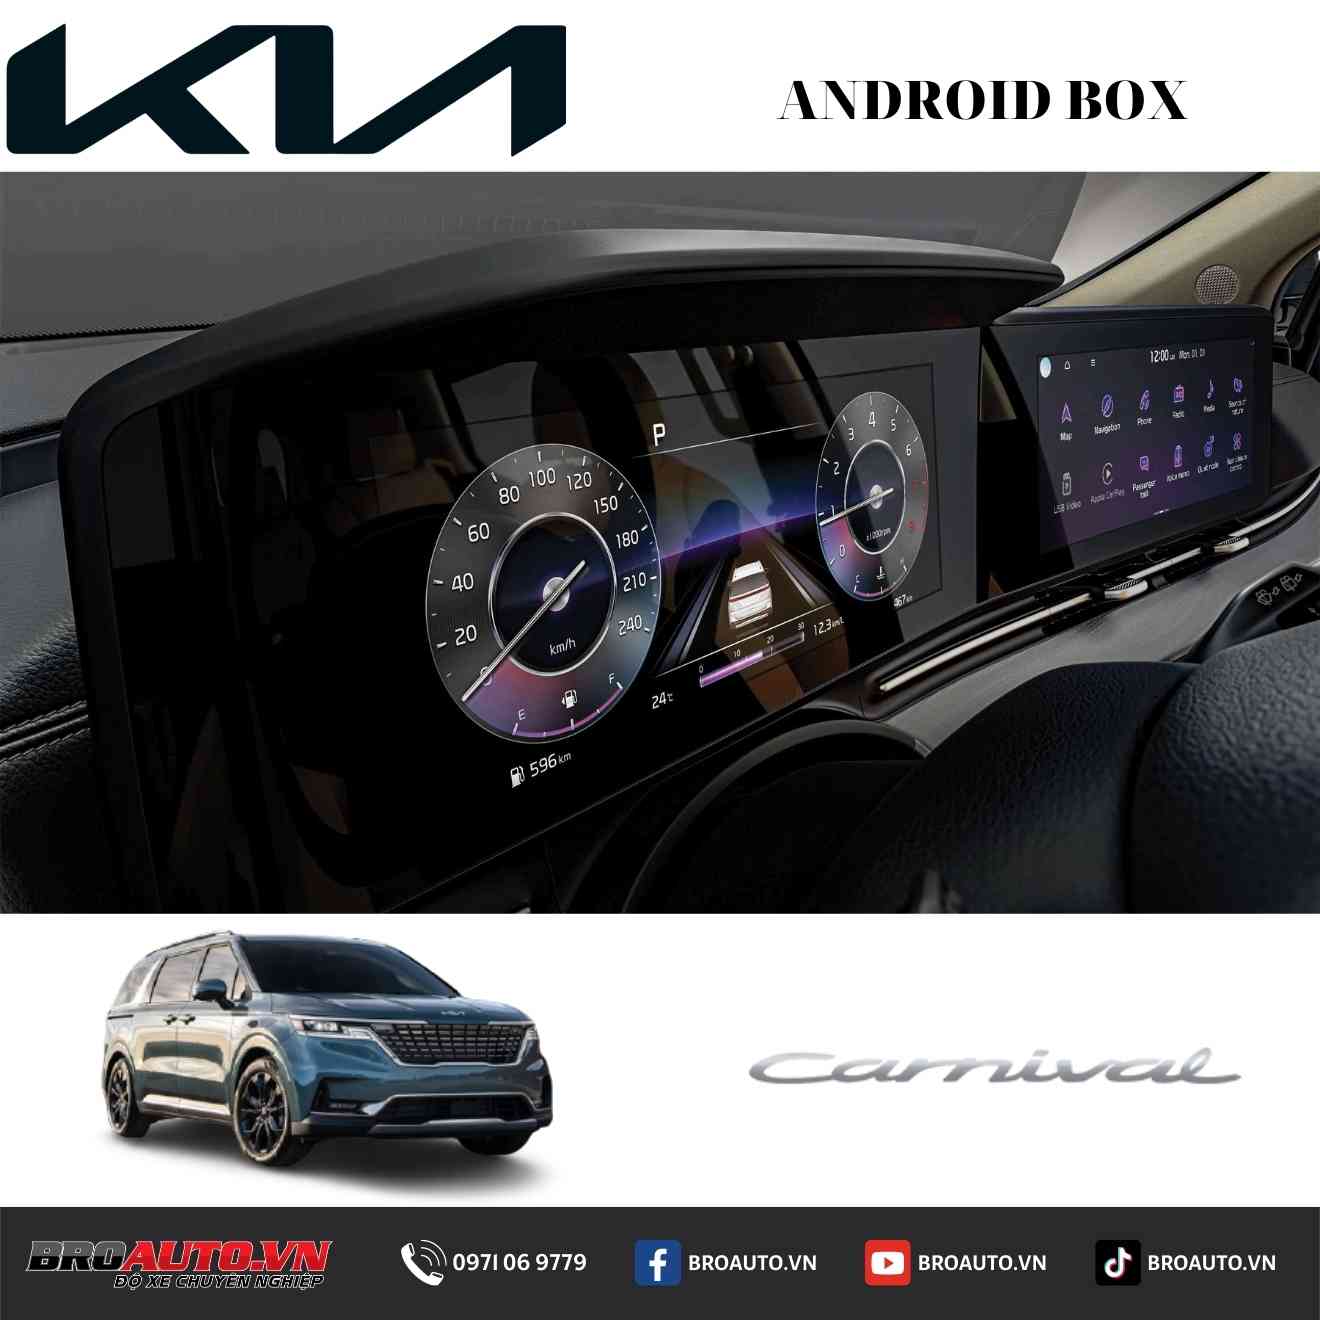 Lắp đặt Android box cho Kia Carnival tại BROAUTO